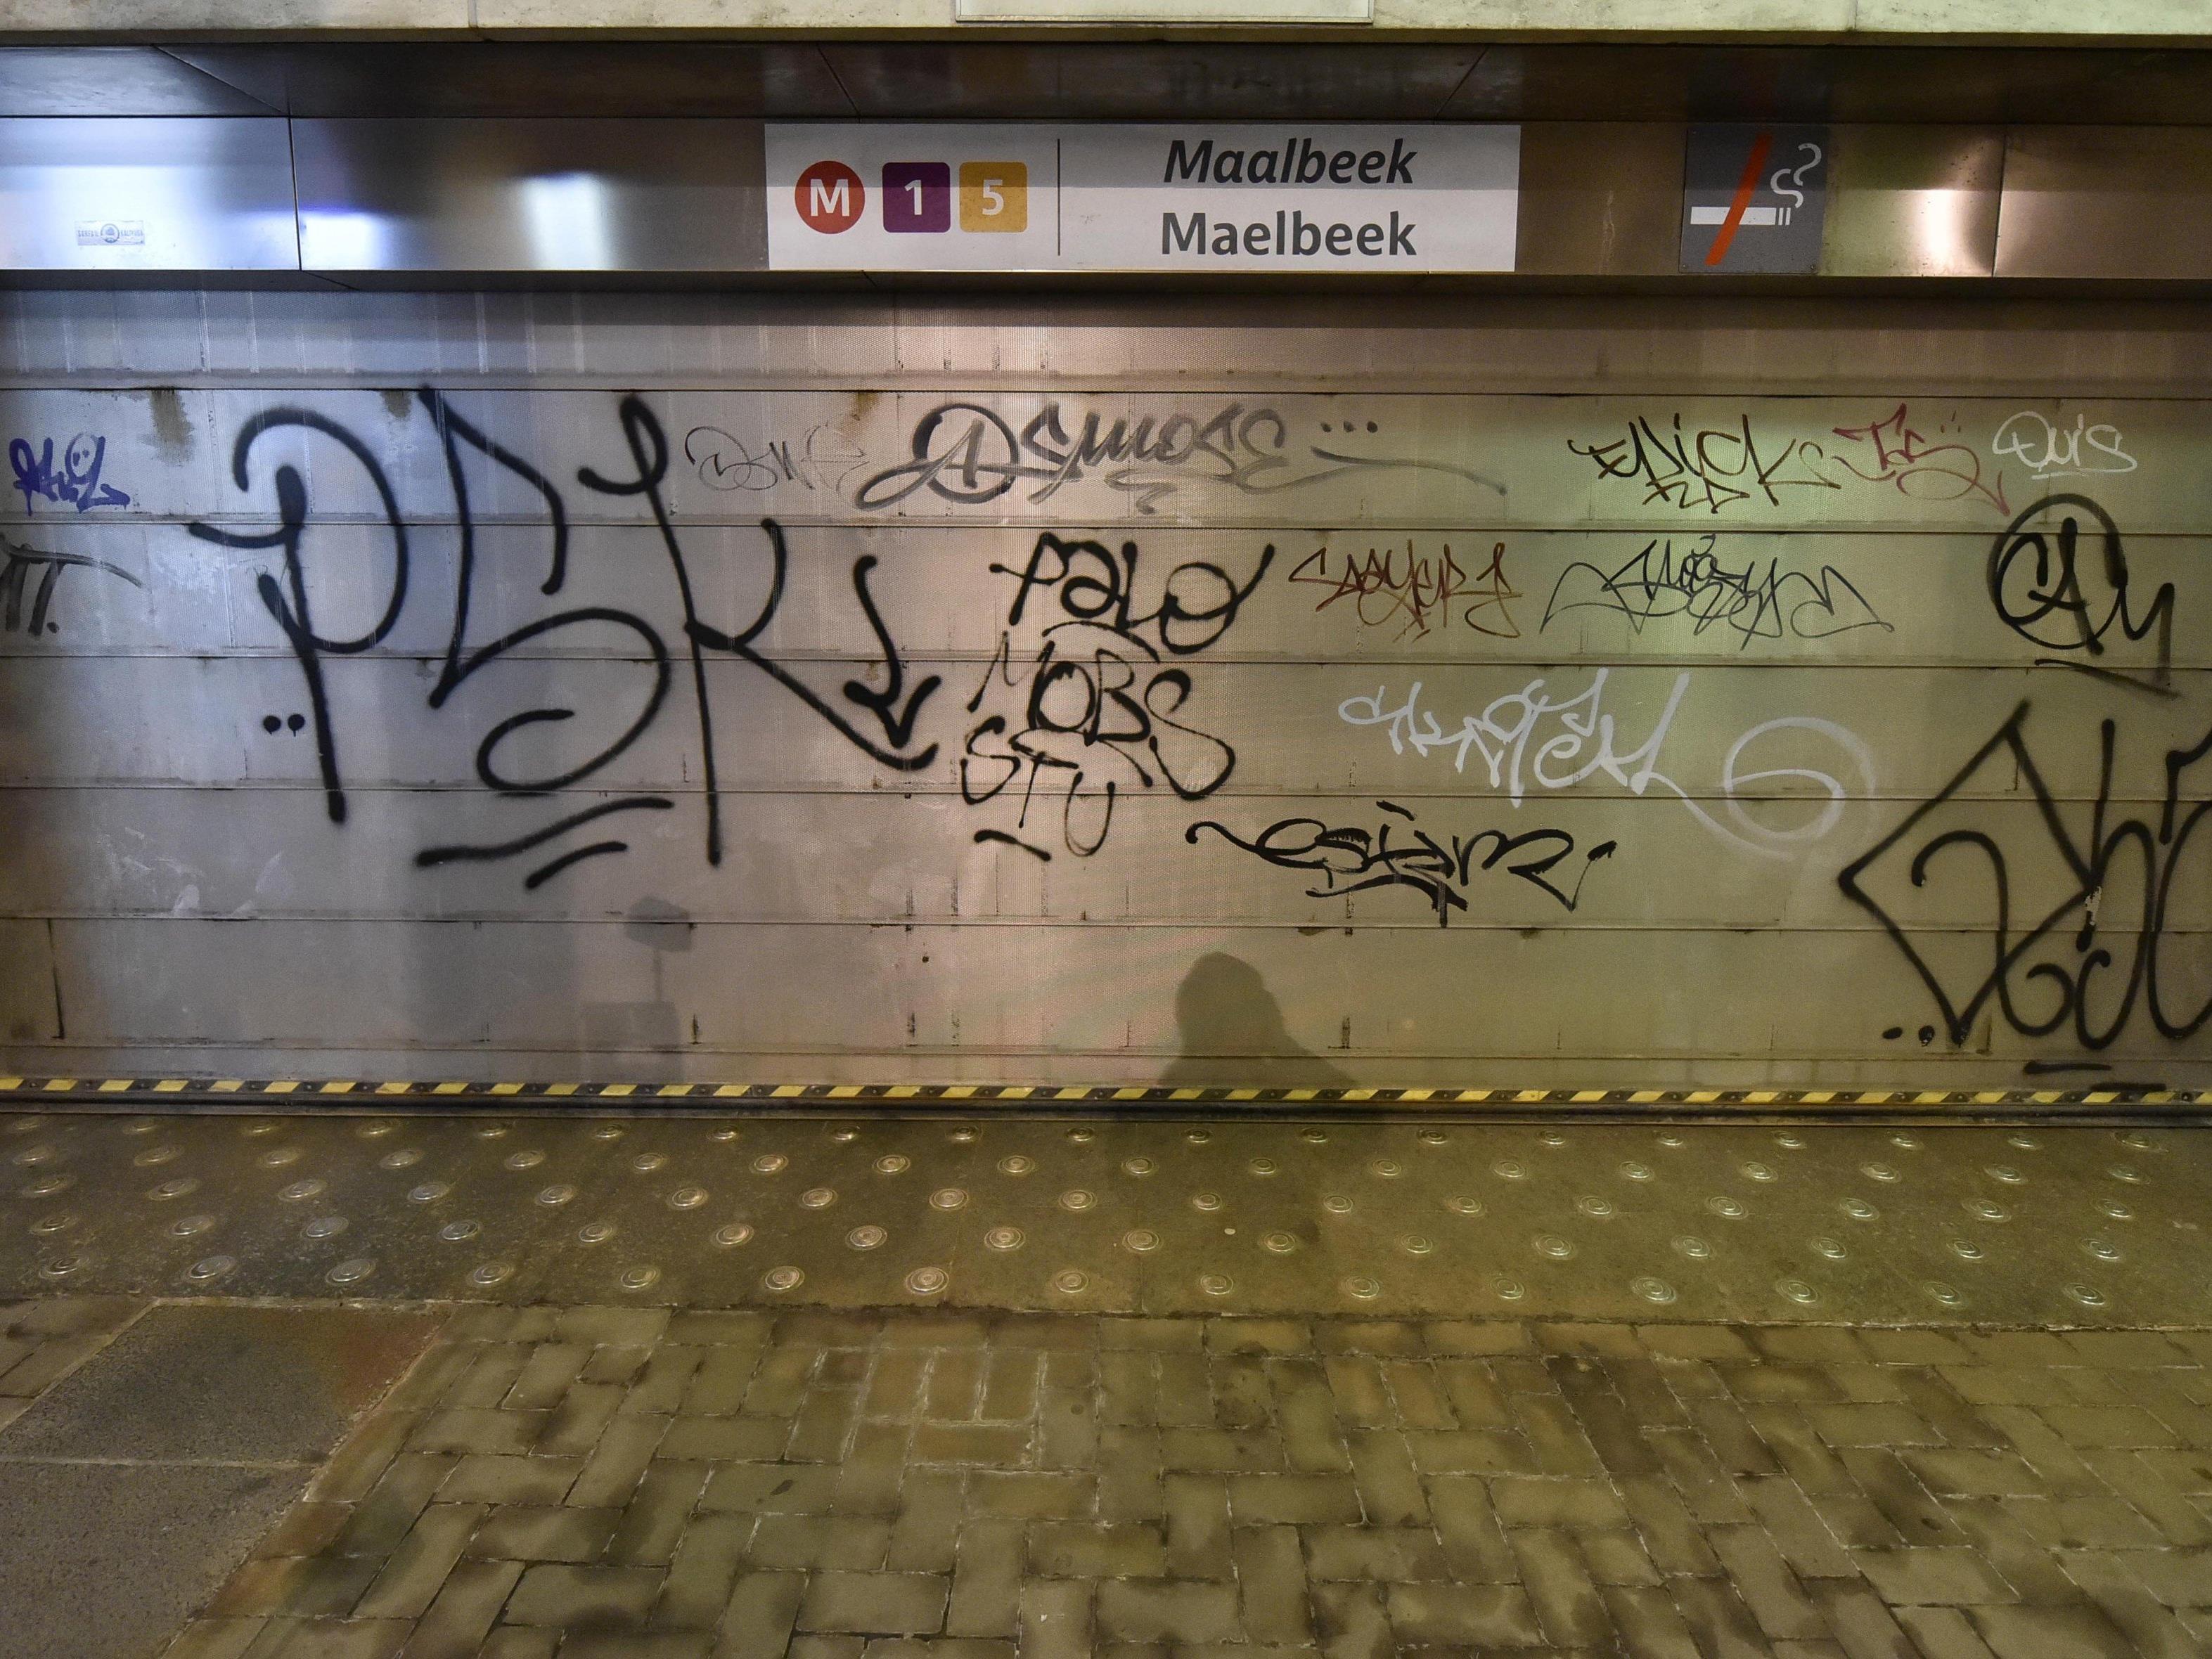 Bei dem Anschlag in einer U-Bahn in der Station Maelbeek mitten im EU-Viertel kamen am Dienstag nach jüngsten Angaben 20 Menschen ums Leben.